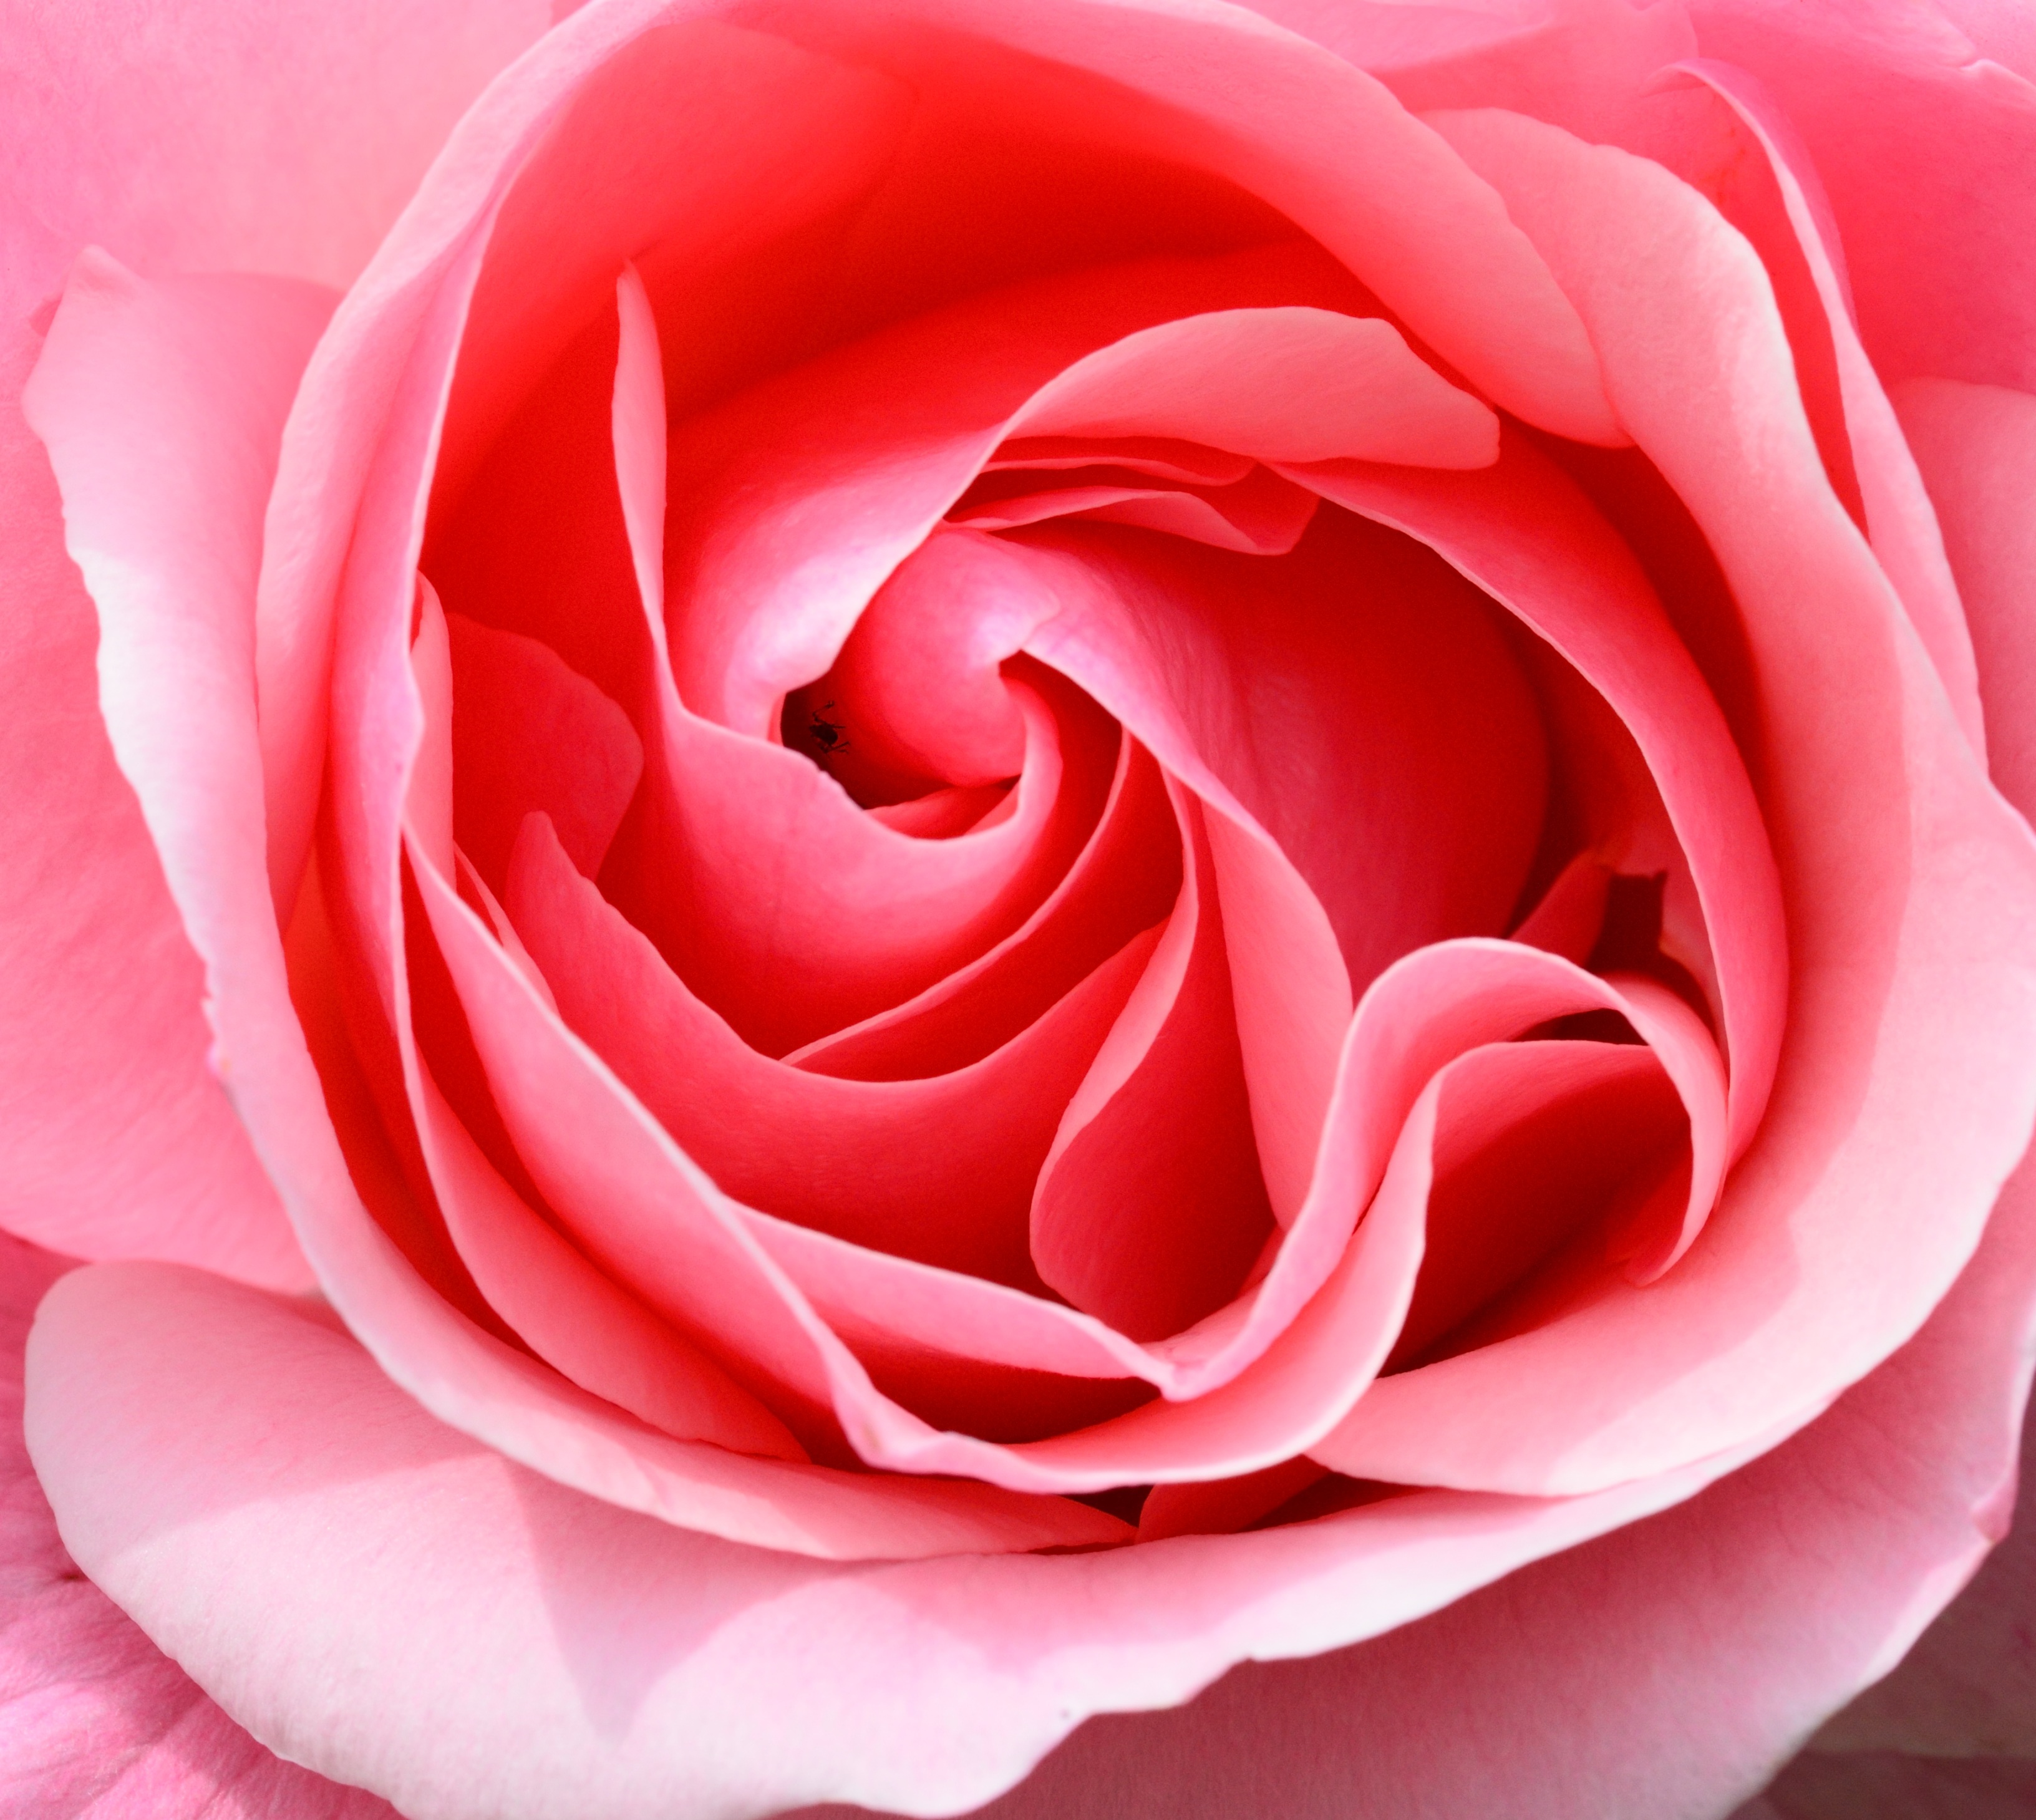 rose-pink-petals-flower